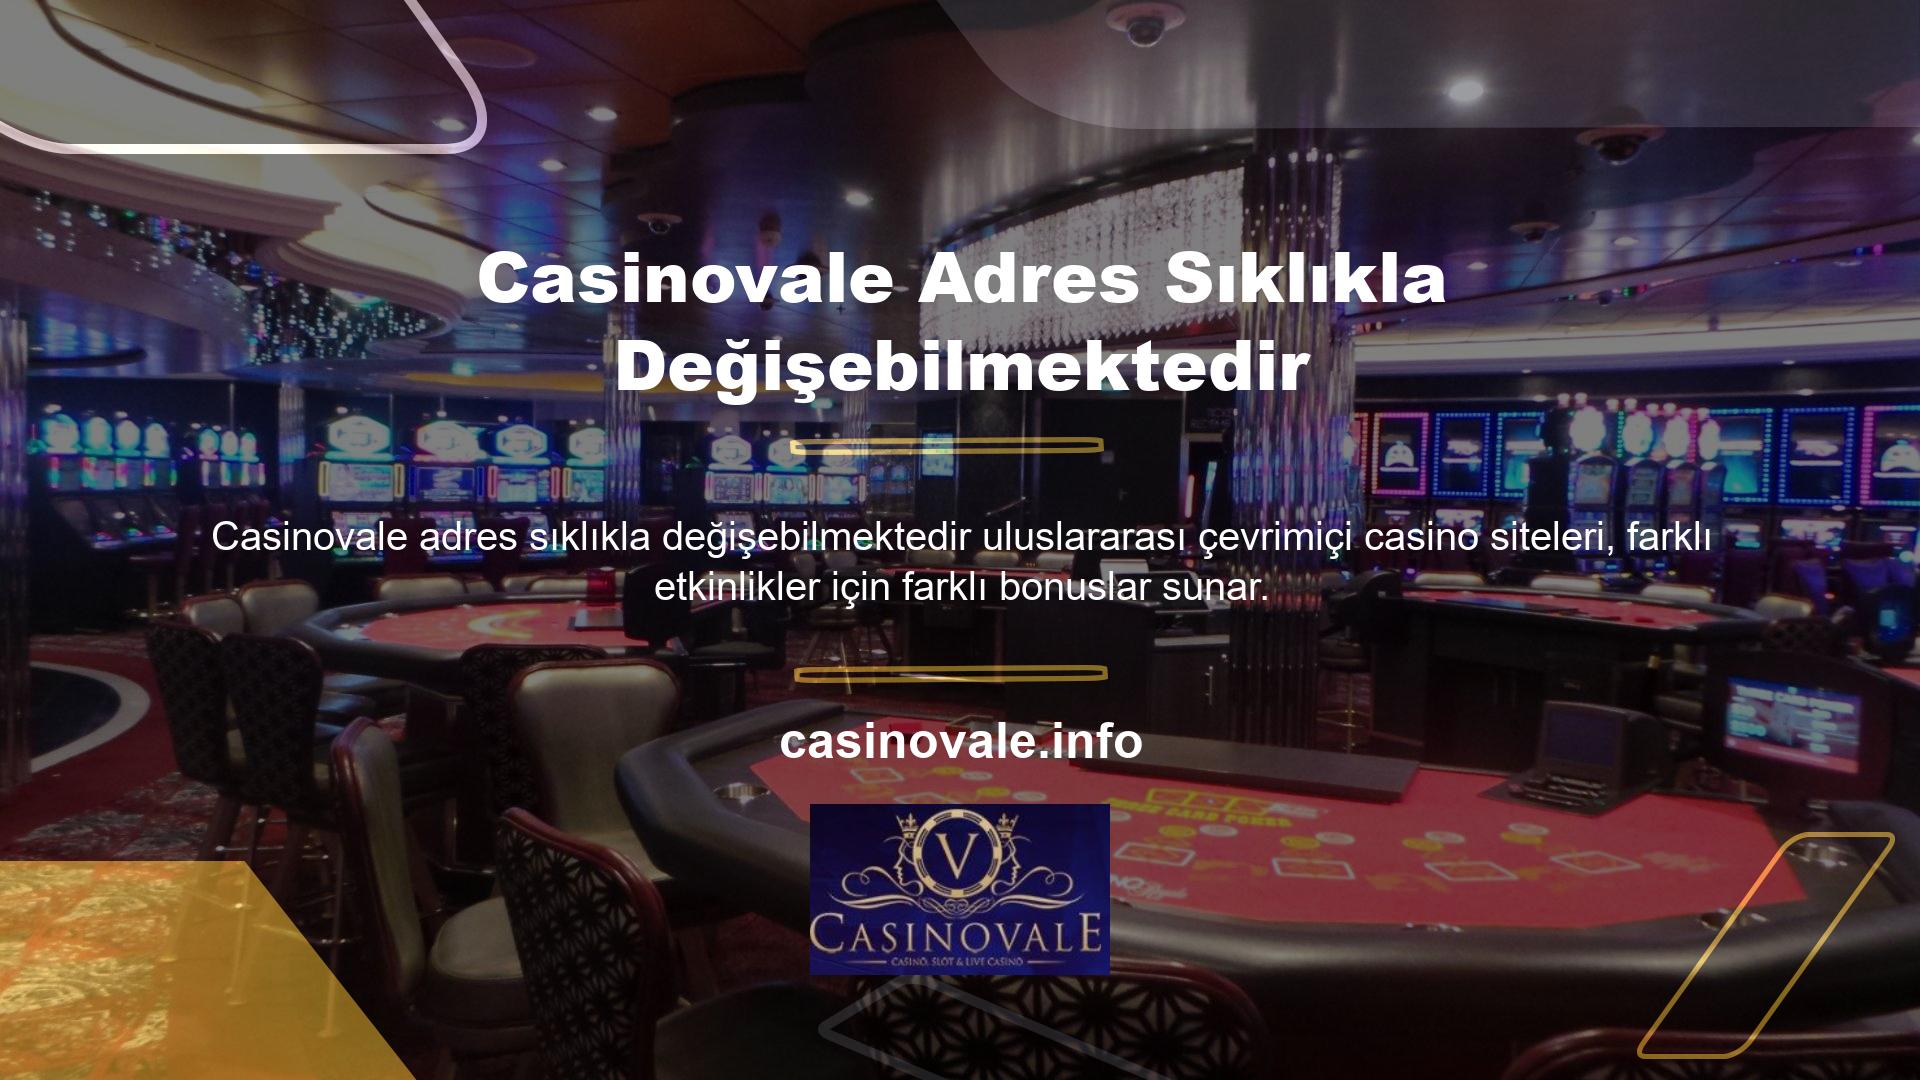 Casino ve casino sitesi tarafından birçok etkinlik ve promosyon sunulmaktadır